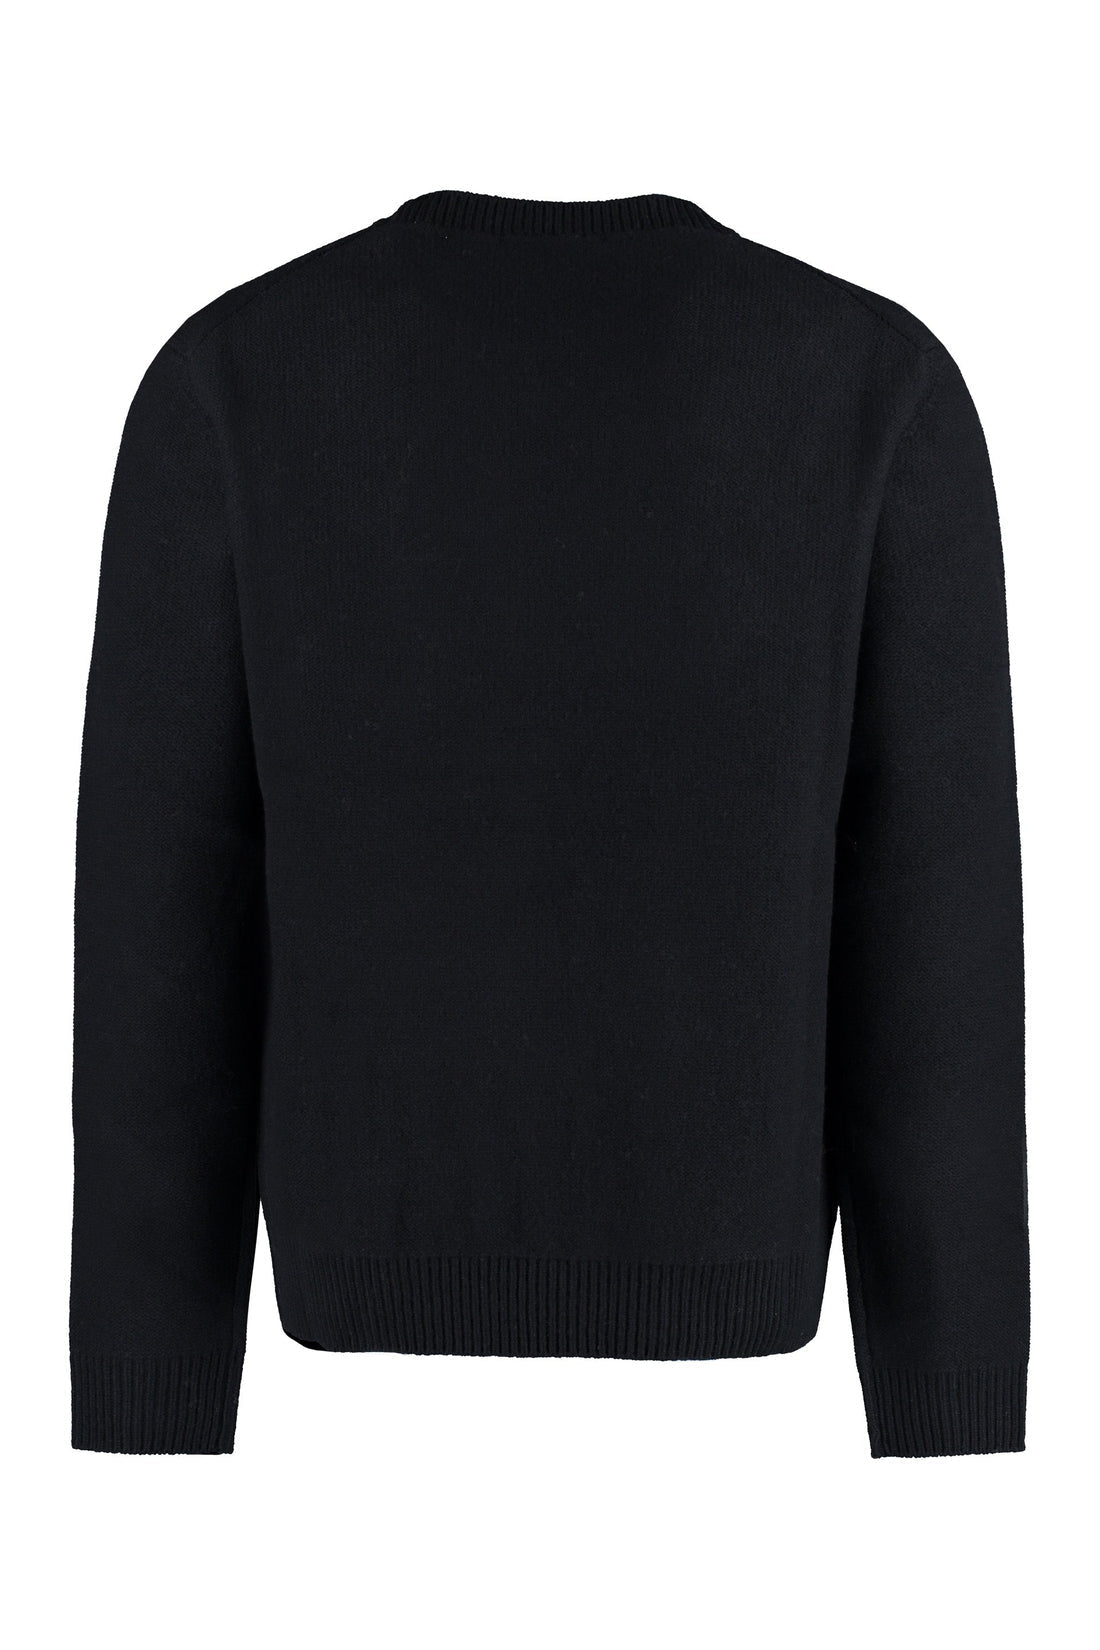 Maison Kitsuné-OUTLET-SALE-Wool crew-neck sweater-ARCHIVIST